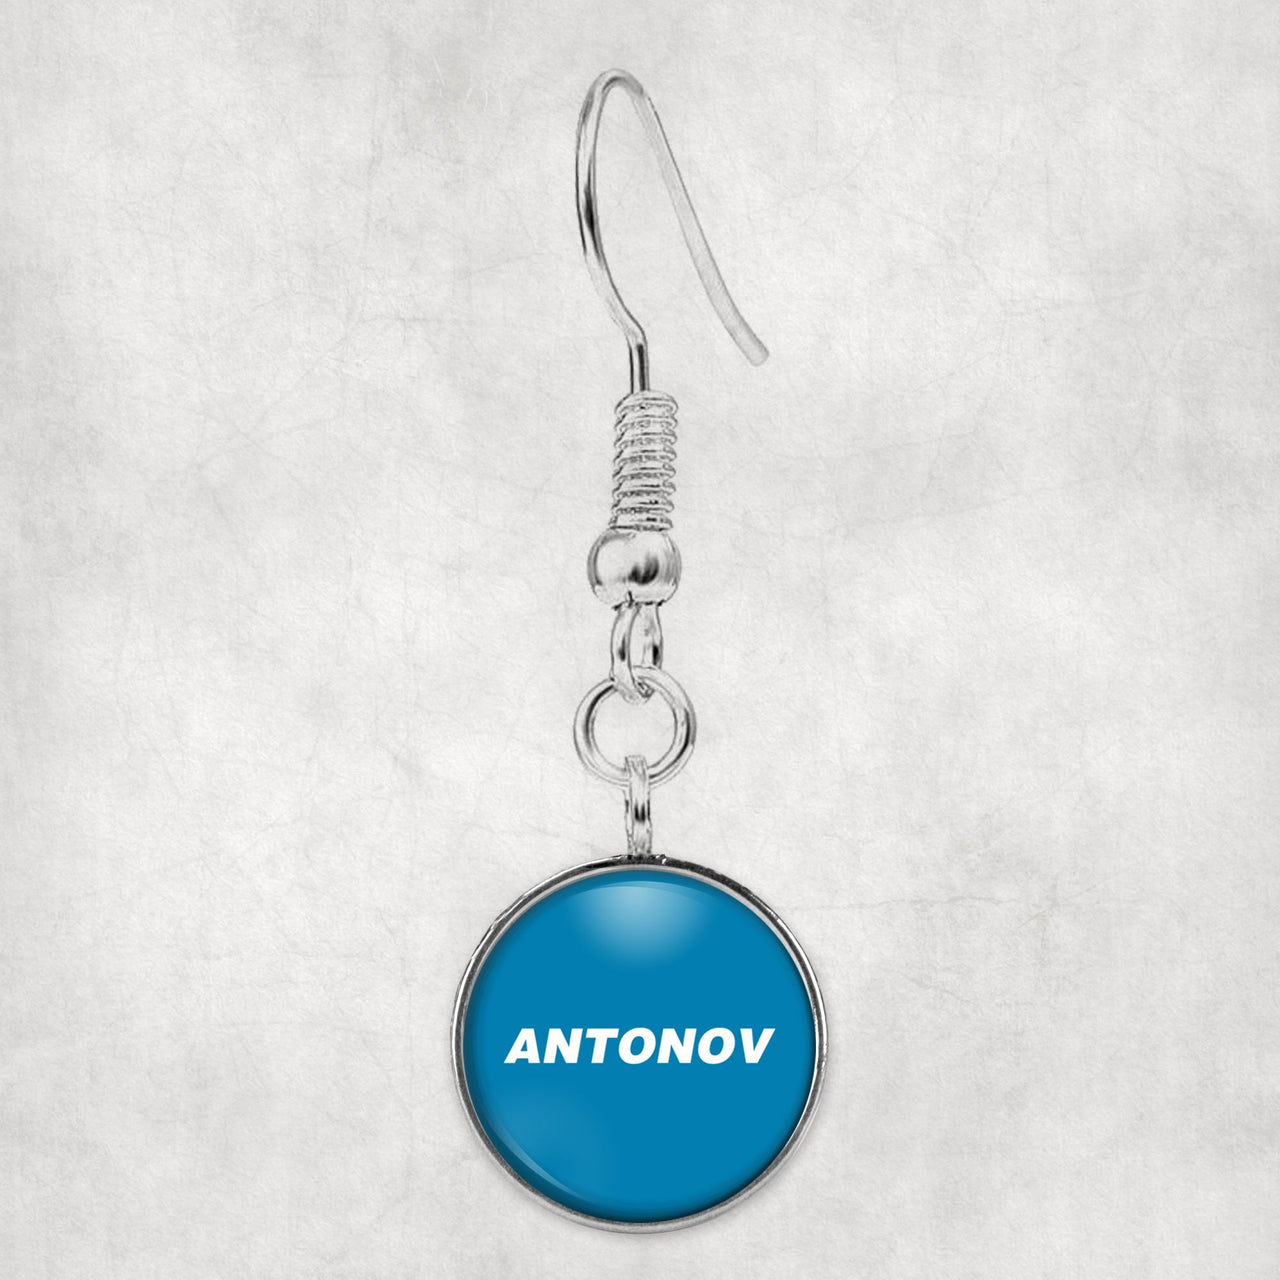 Antonov & Text Designed Earrings